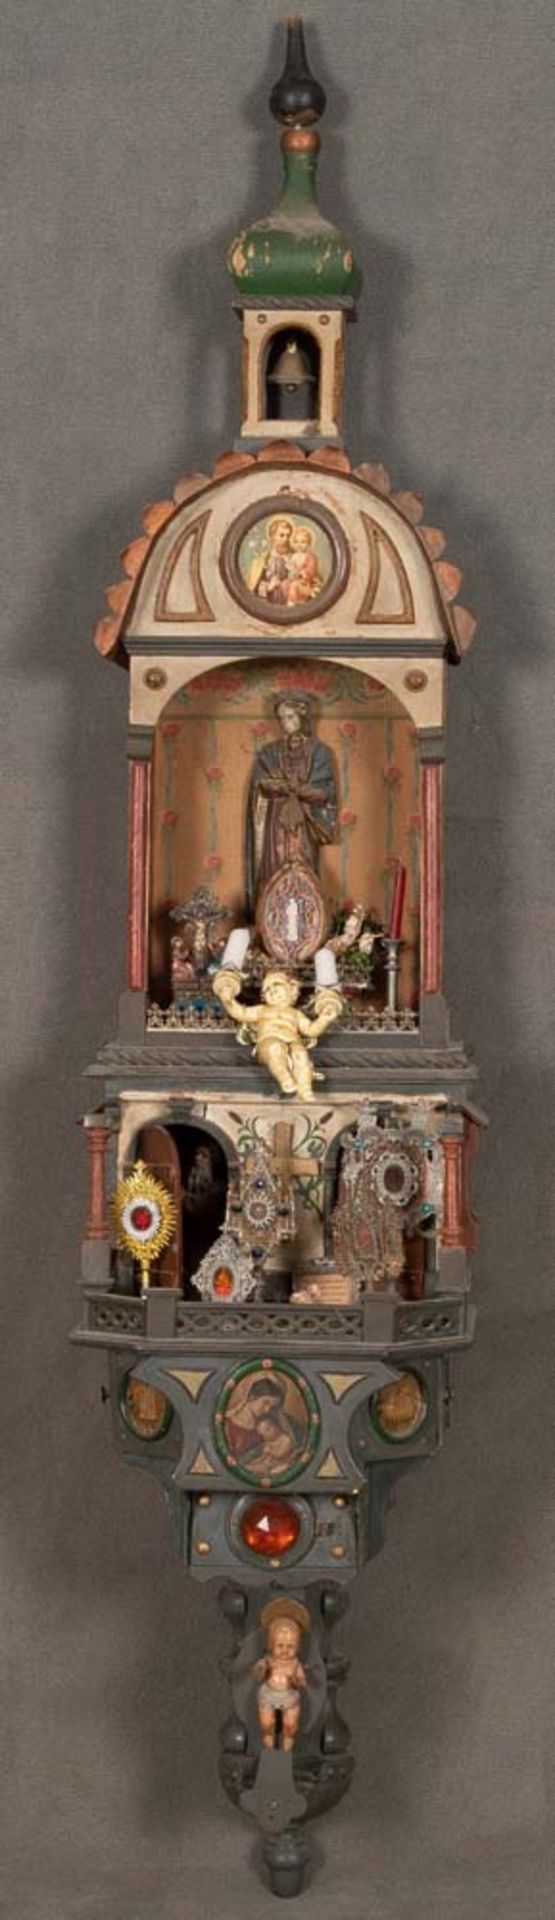 Historismus-Schrein. Süddeutsch um 1900. Massivholzgehäuse, farbig gefasst mit religiösen Motiven,